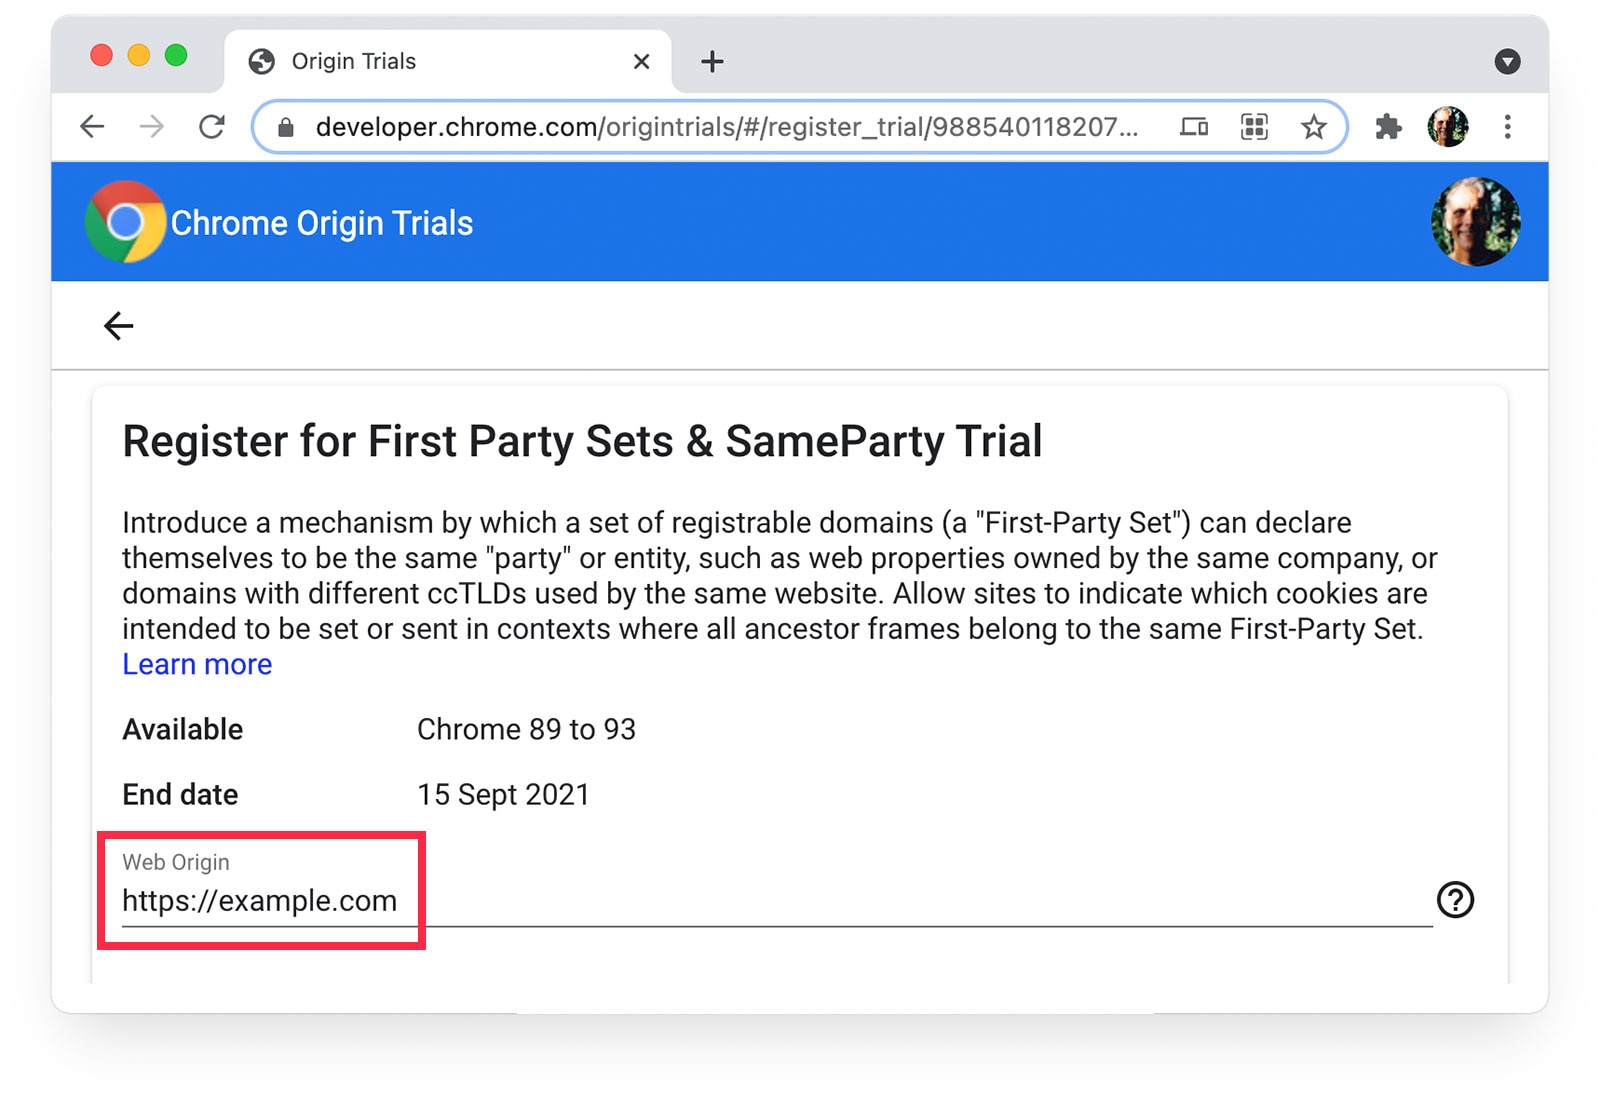 Uji Coba Origin Chrome 
halaman yang menampilkan https://example.com yang dipilih sebagai Asal Web.